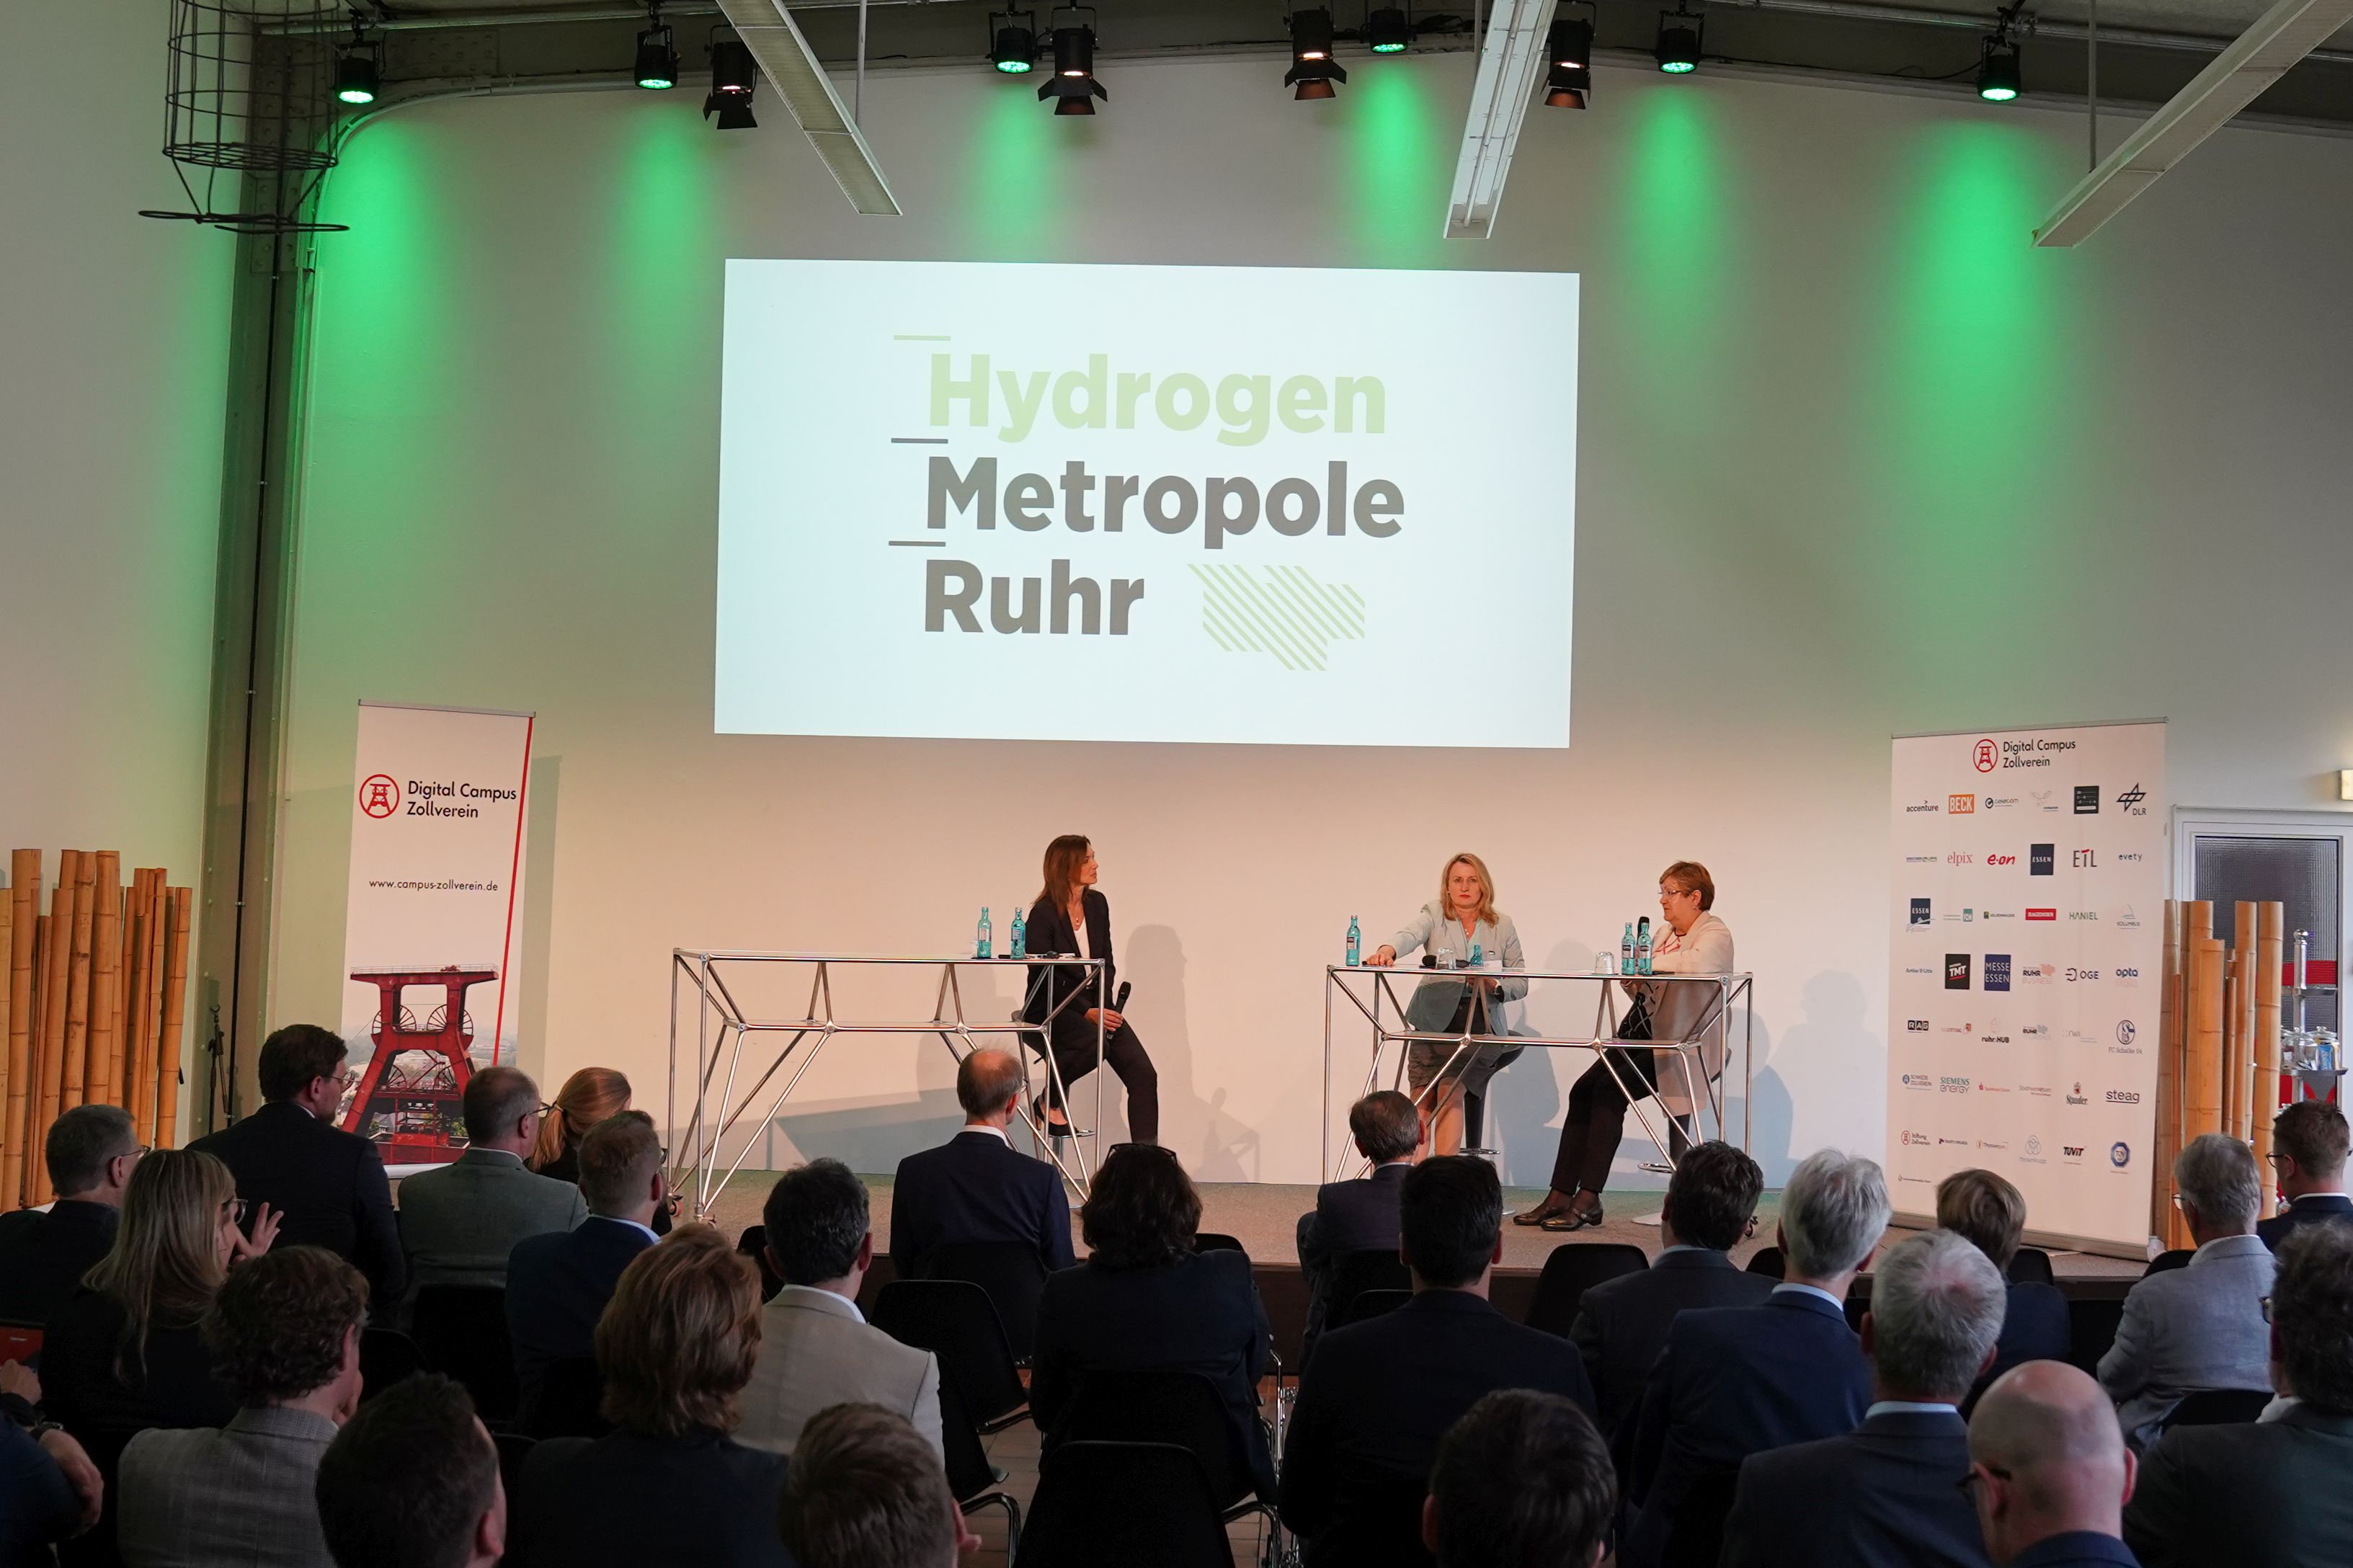 RVR-Regionaldirektorin Karola Geiß-Netthöfel (rechts) und Prof. Dr. Julia Frohne (Mitte) bei der Vorstellung des Hydrogen-Netzwerkes am 17. Mai 2022 in Essen zusammen mit Moderatorin Jeanette Kuhn.